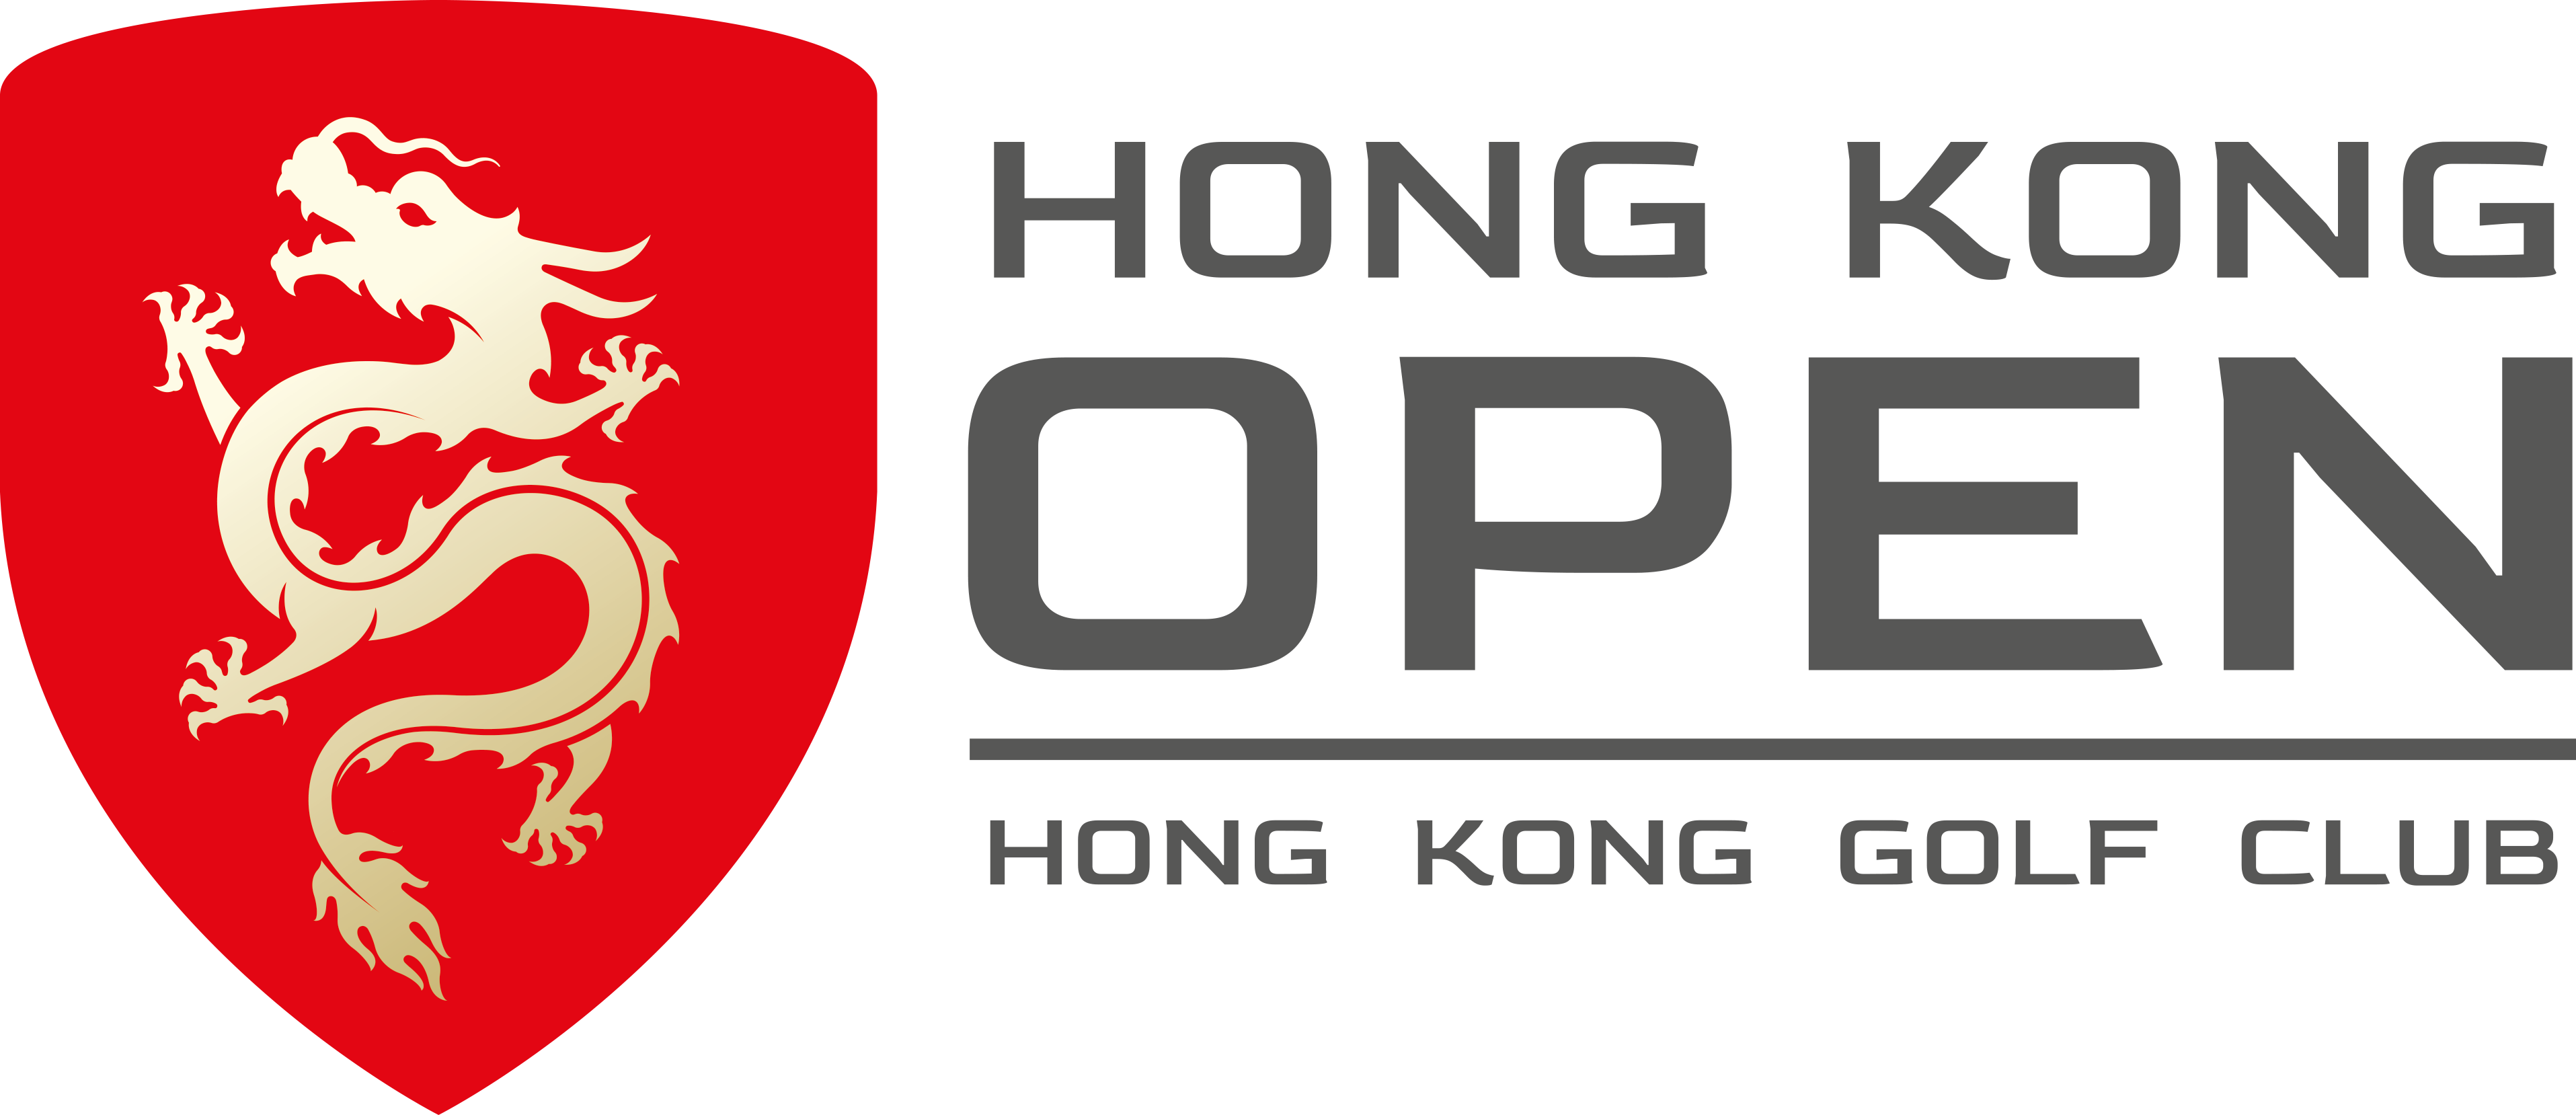 The Hong Kong Open